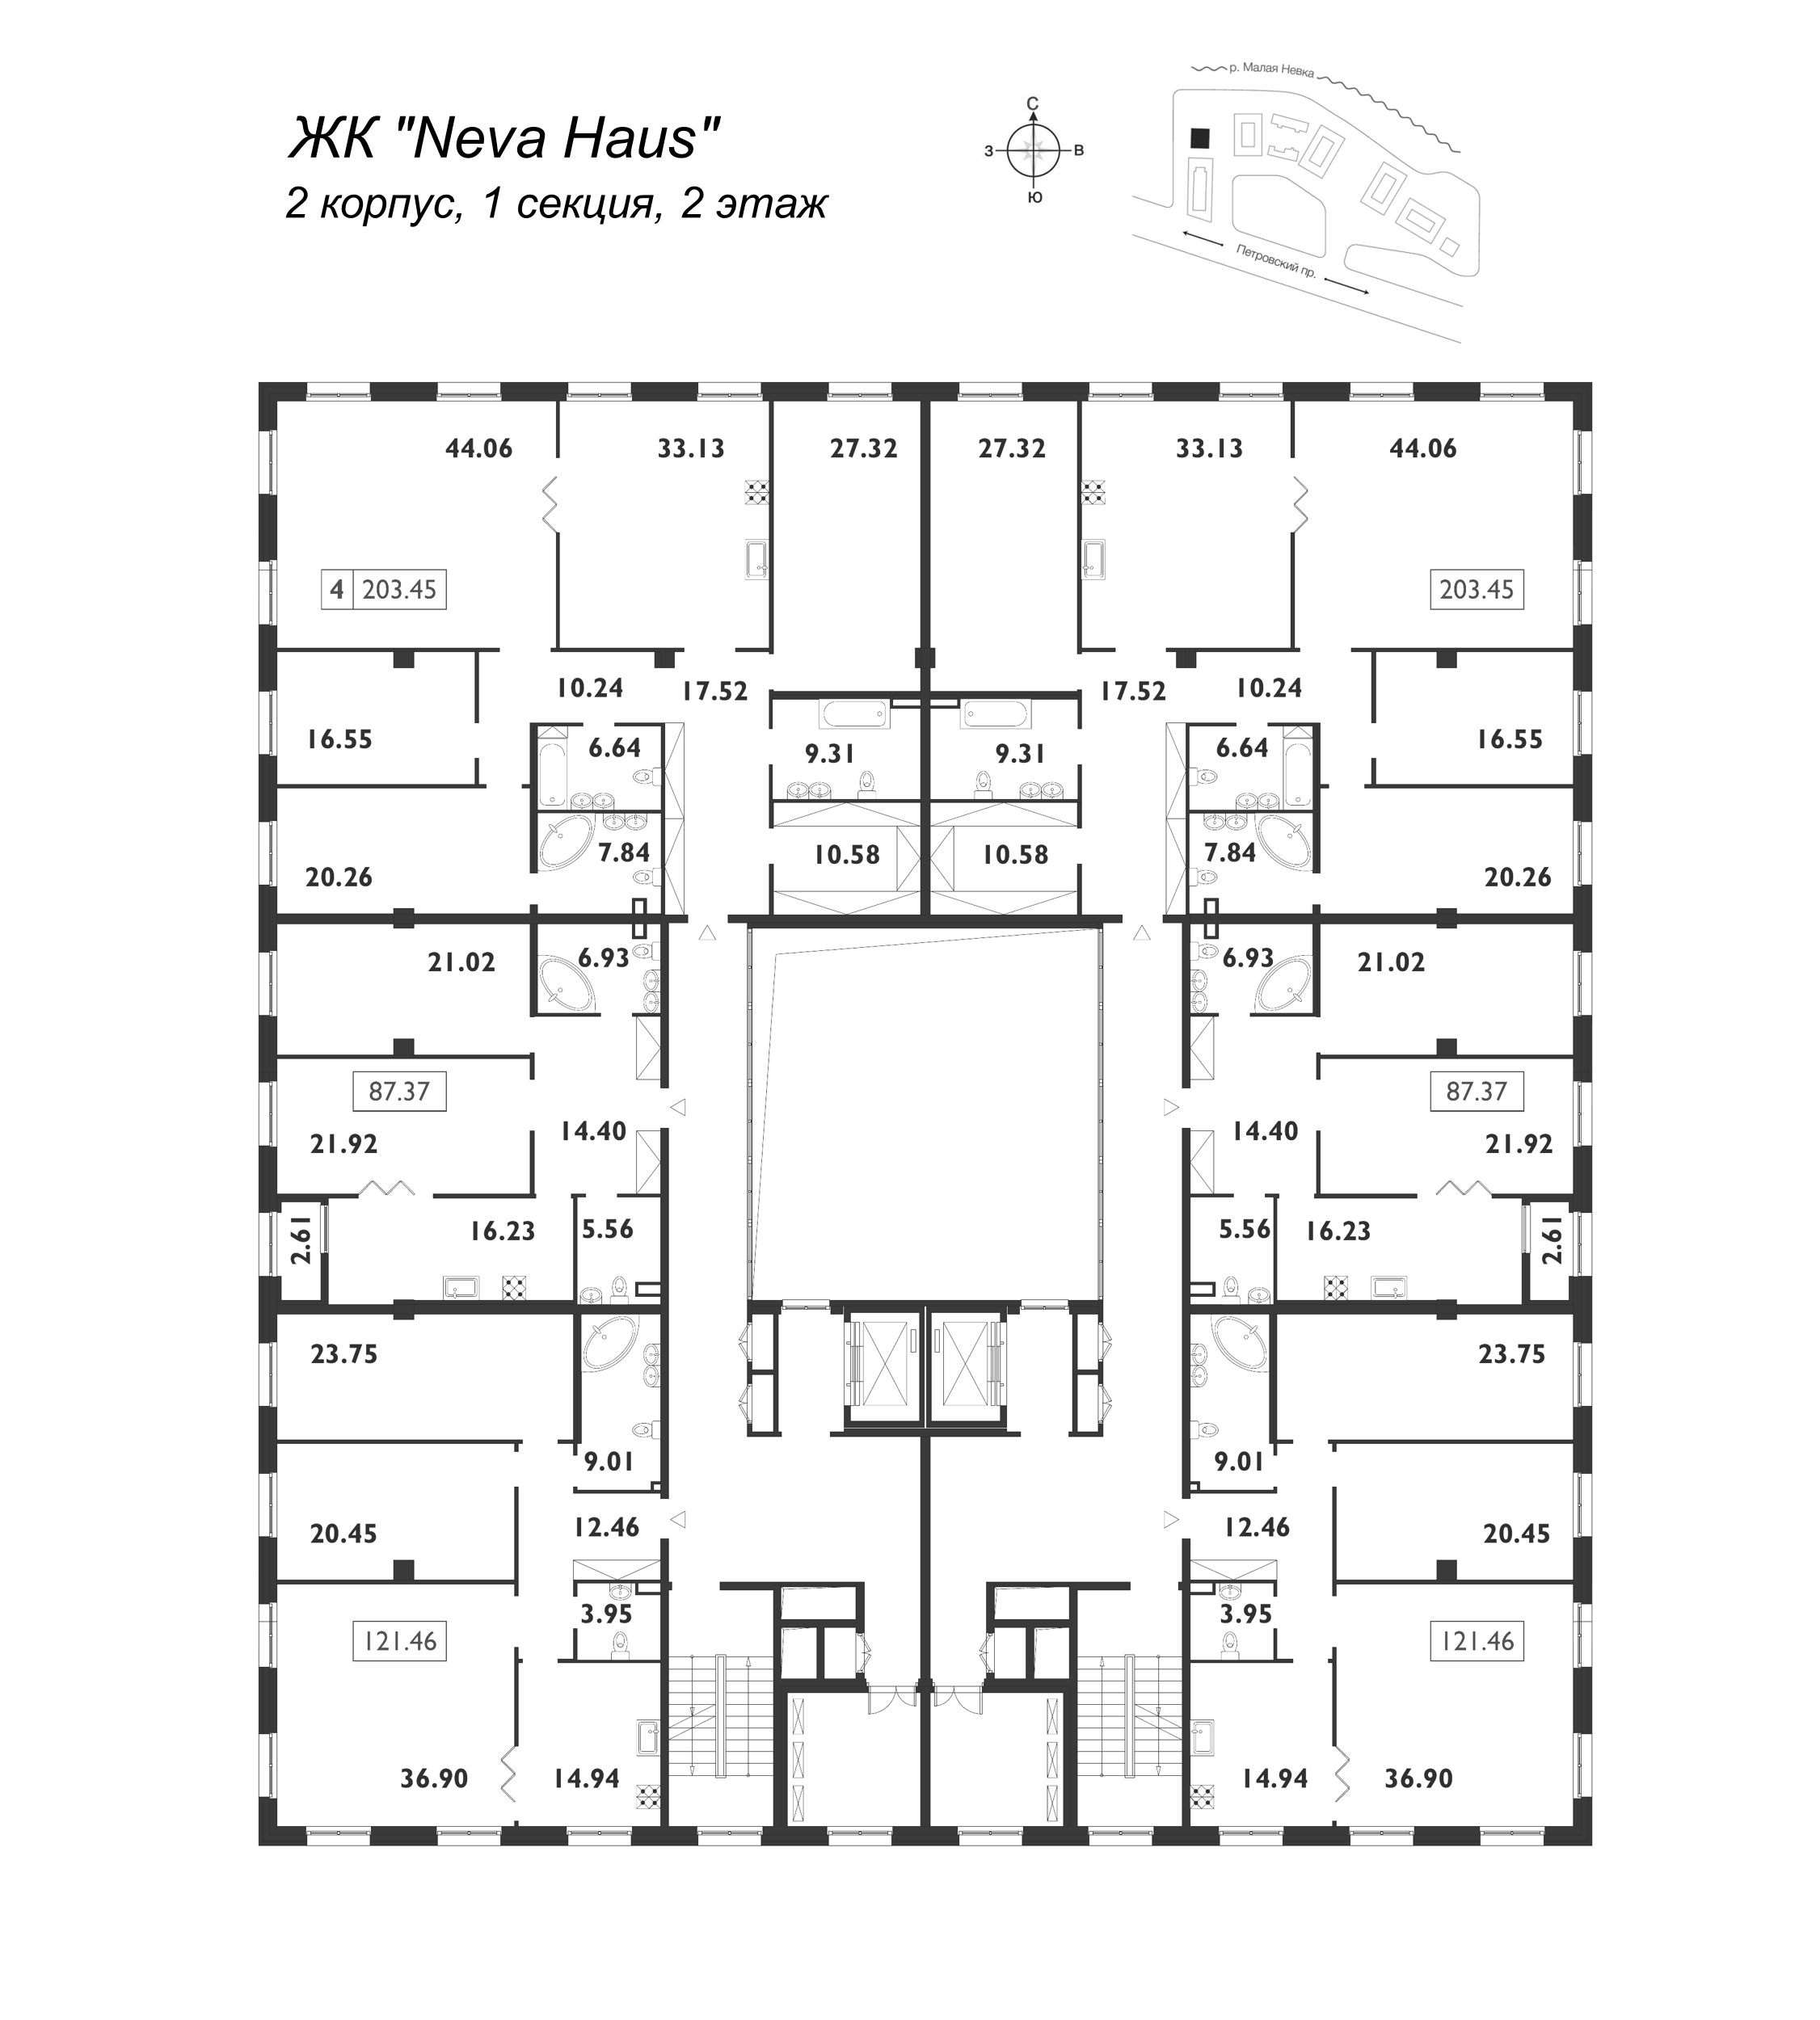 5-комнатная (Евро) квартира, 203.6 м² в ЖК "Neva Haus" - планировка этажа